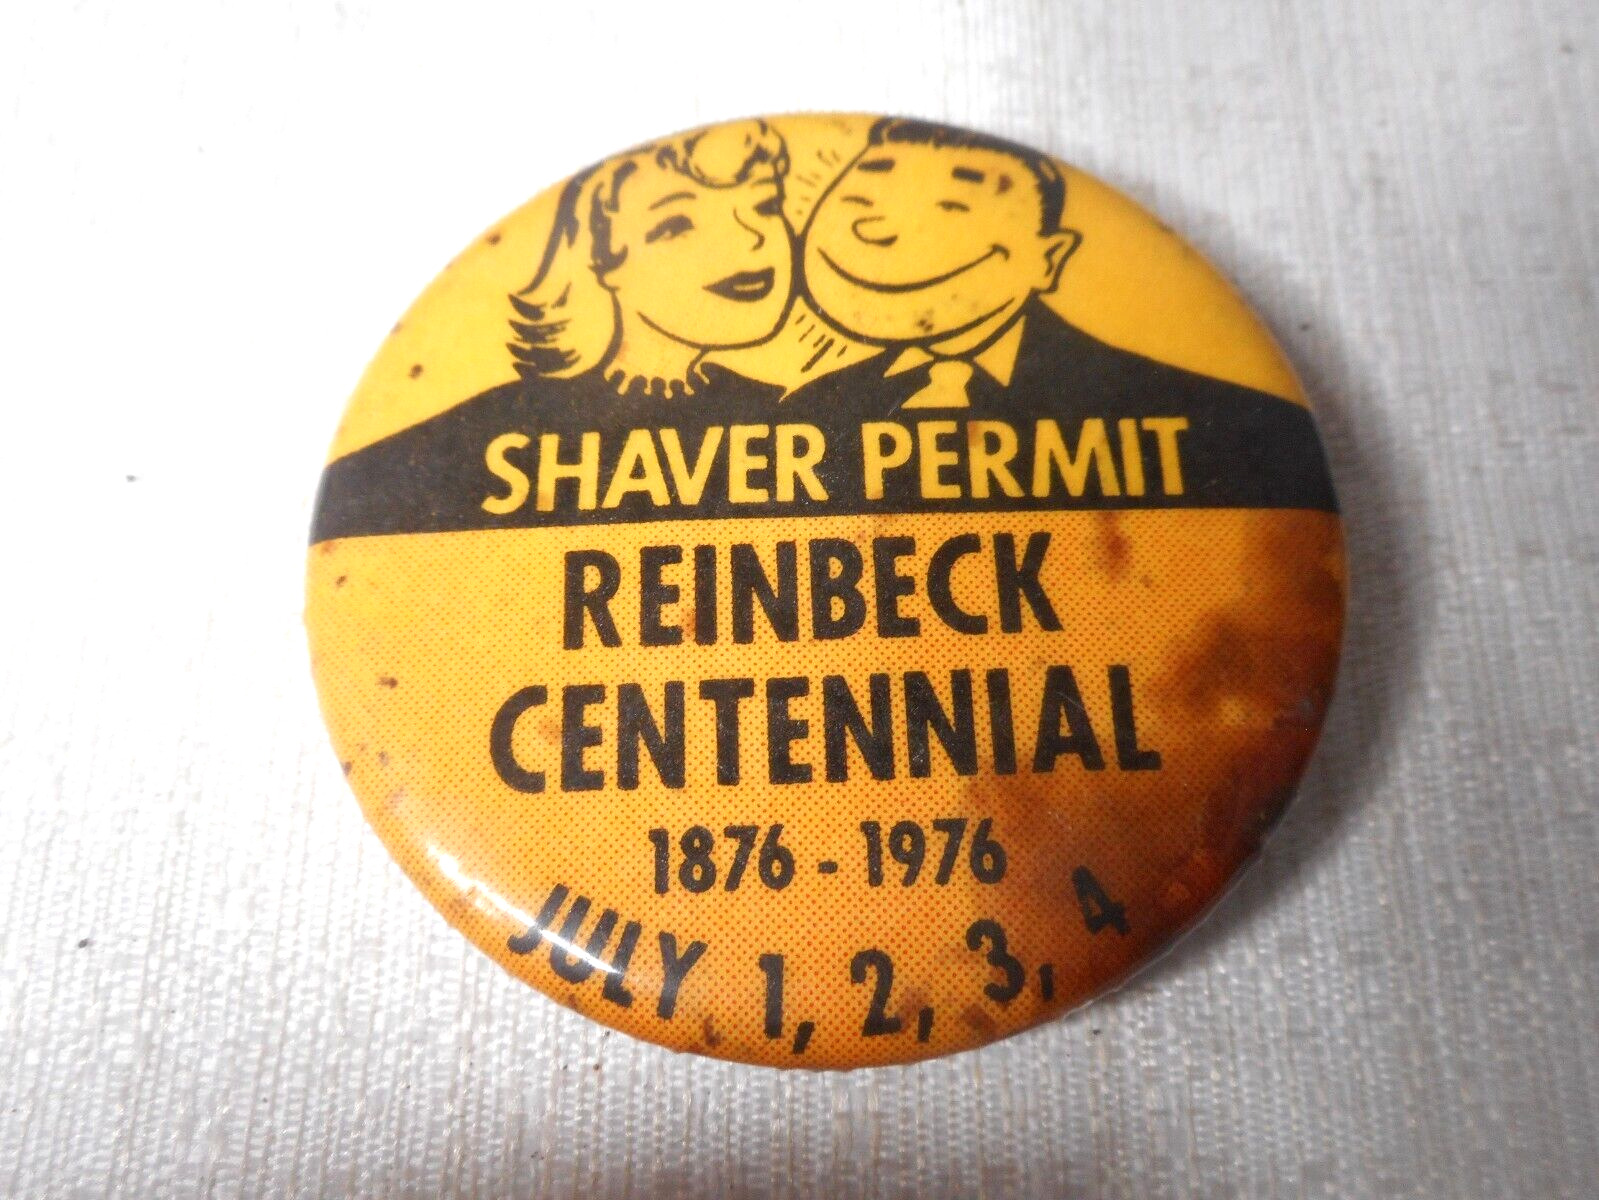 Shaver Permit REINBECK CENTENNIAL 1876-1976 July 1, 2, 3, 4 Round Vintage Button